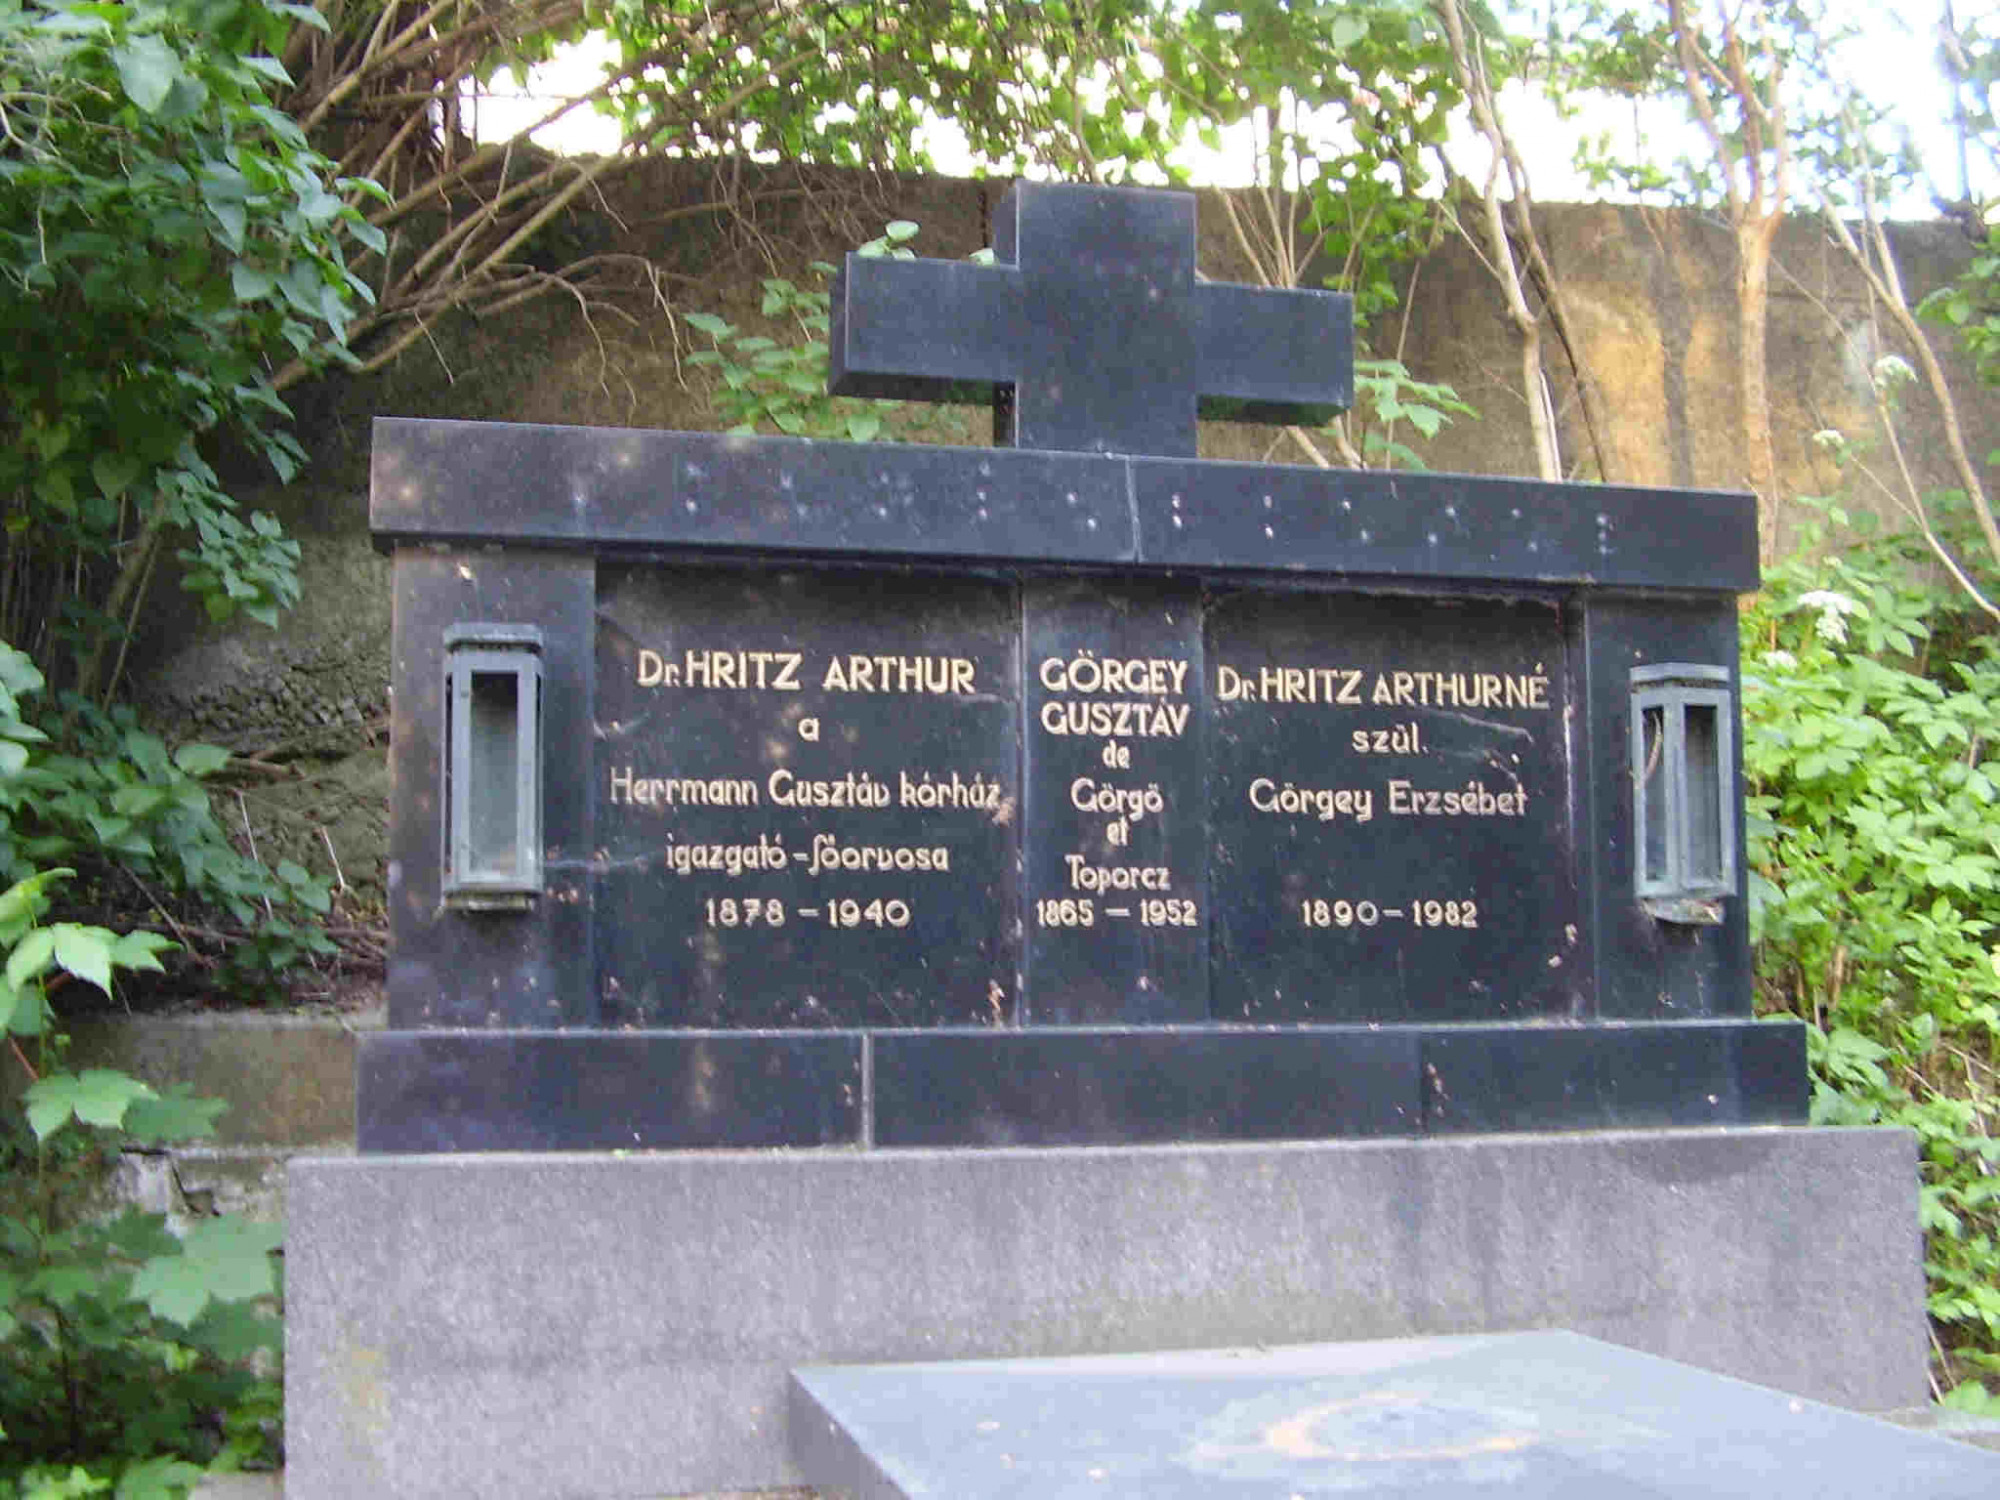 Dr. Hritz Arthur síremléke, mely korábban az evangélikus temetőben állt.